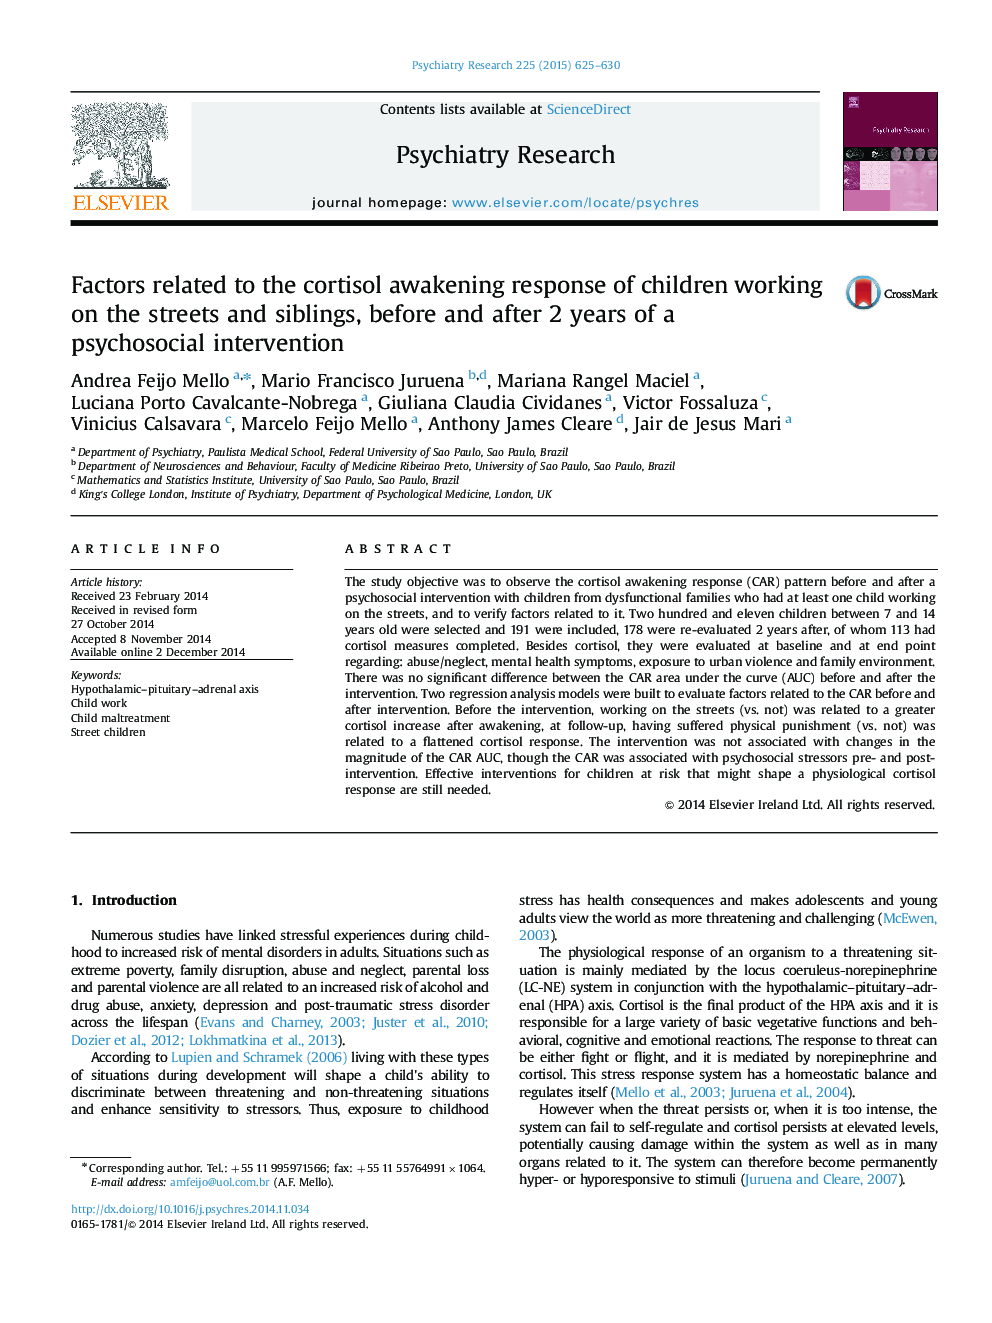 عوامل مرتبط با پاسخ بیداری کورتیزول کودکان در خیابان ها و خواهران و برادران قبل و بعد از 2 سال مداخله روان شناختی 